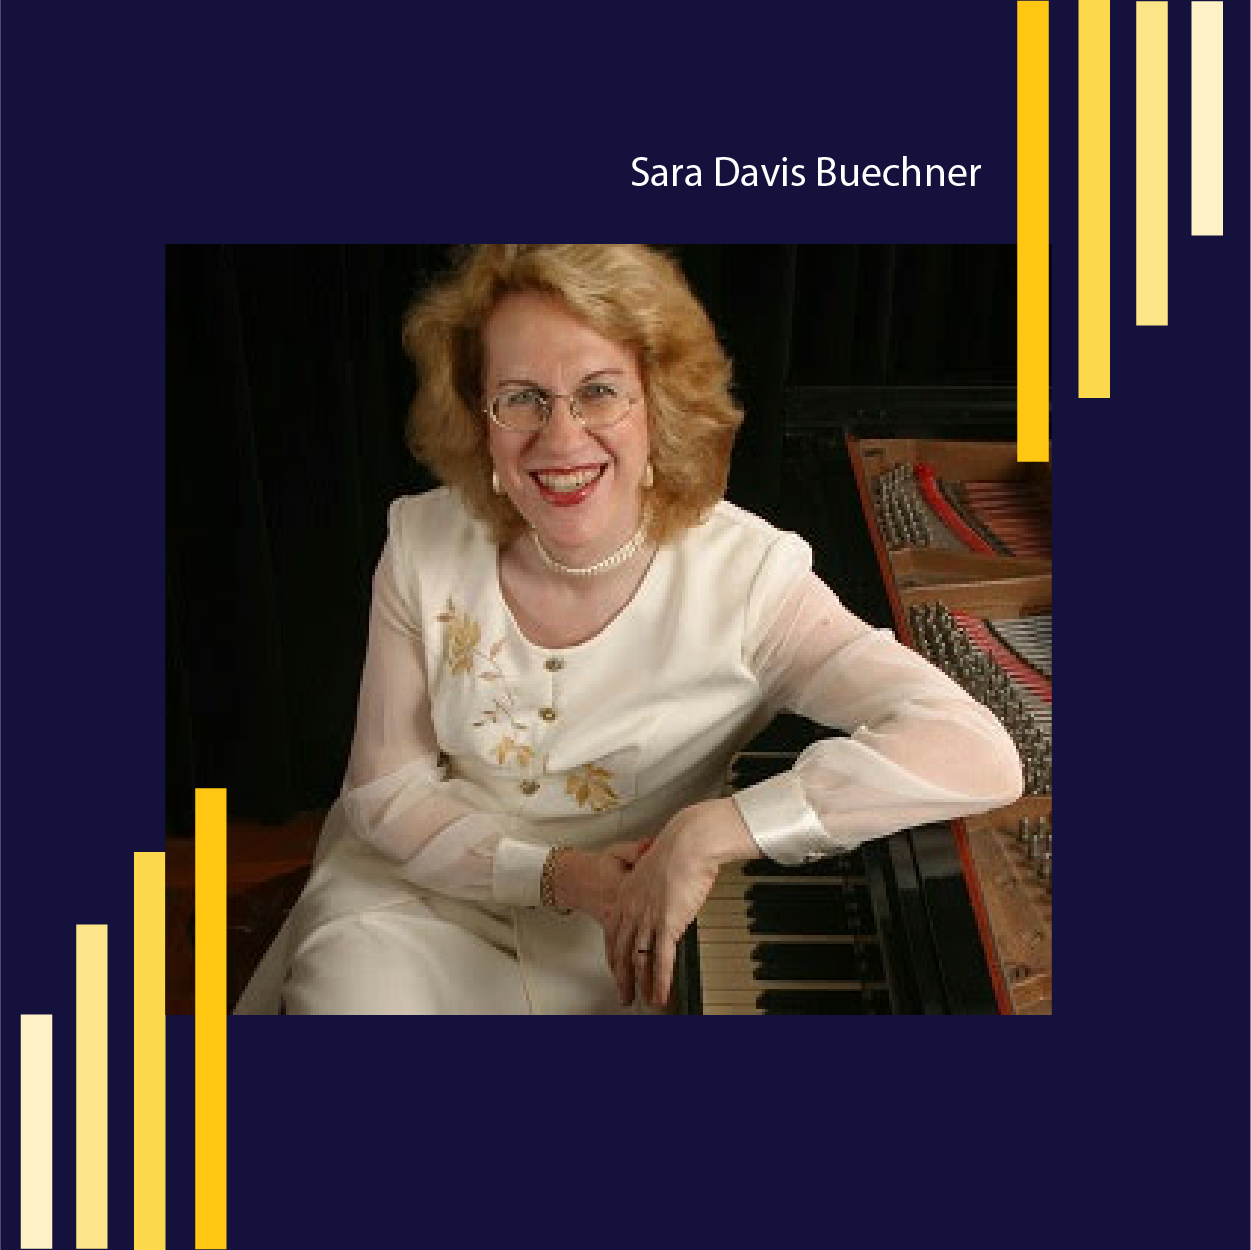 GENVAS featuring Sara Davis Buechner, Piano